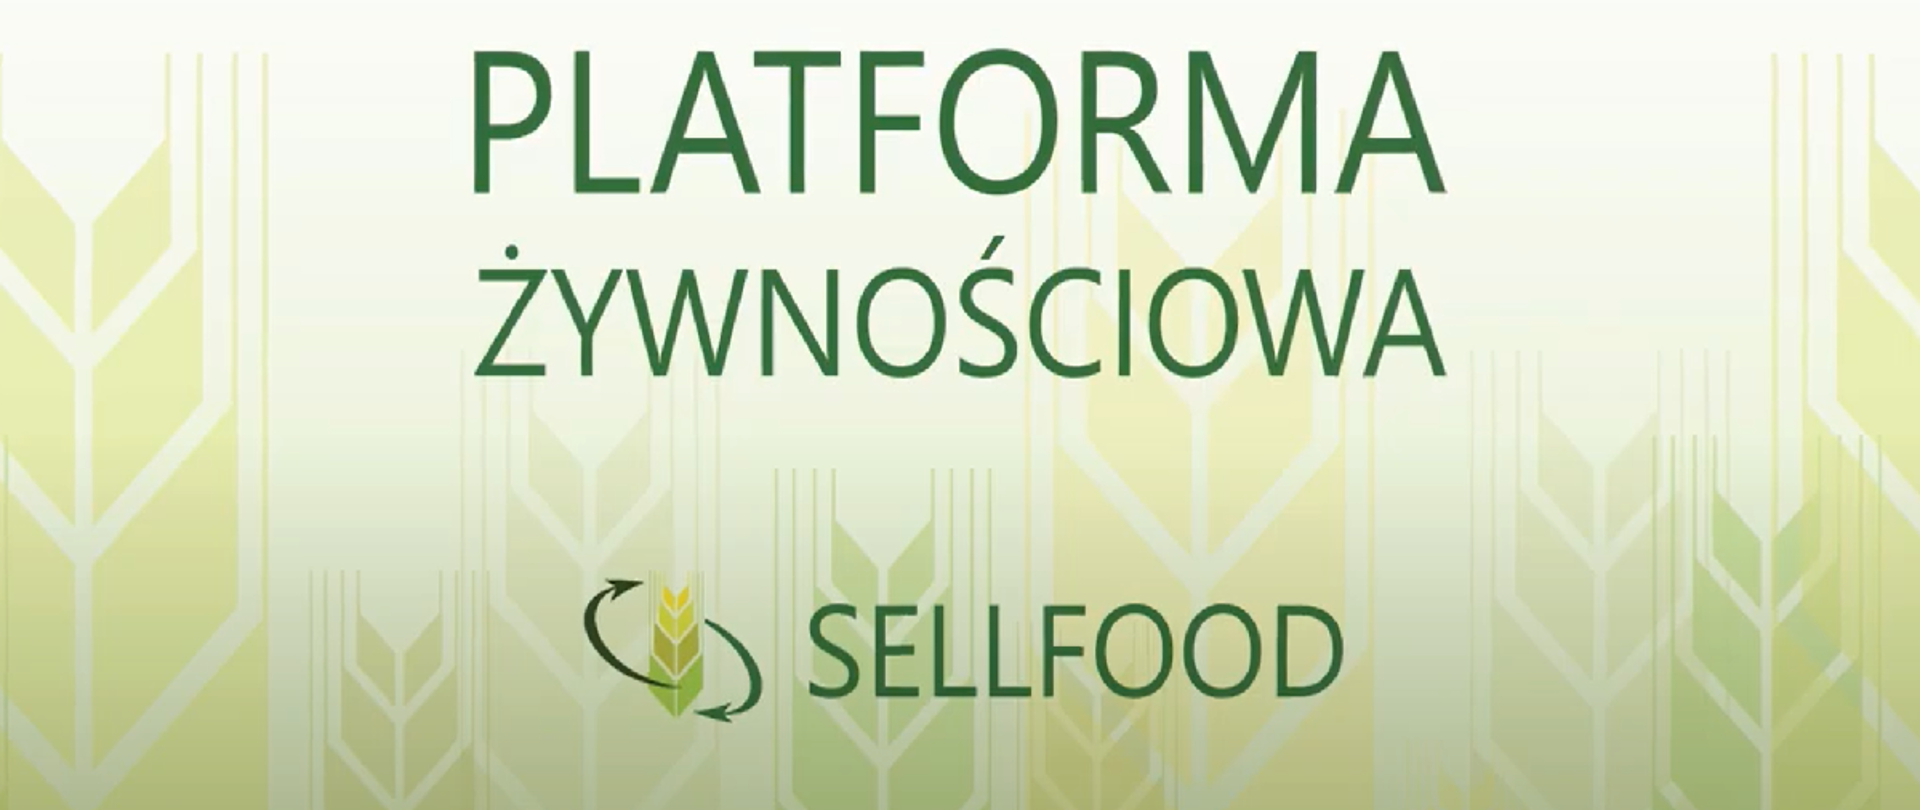 Pozioma plansza z zielonym napisem drukowanymi literami: Platforma Żywnościowa Sellfood. Jasnozielone tło z graficznie wyobrażonymi kłosami zboża.